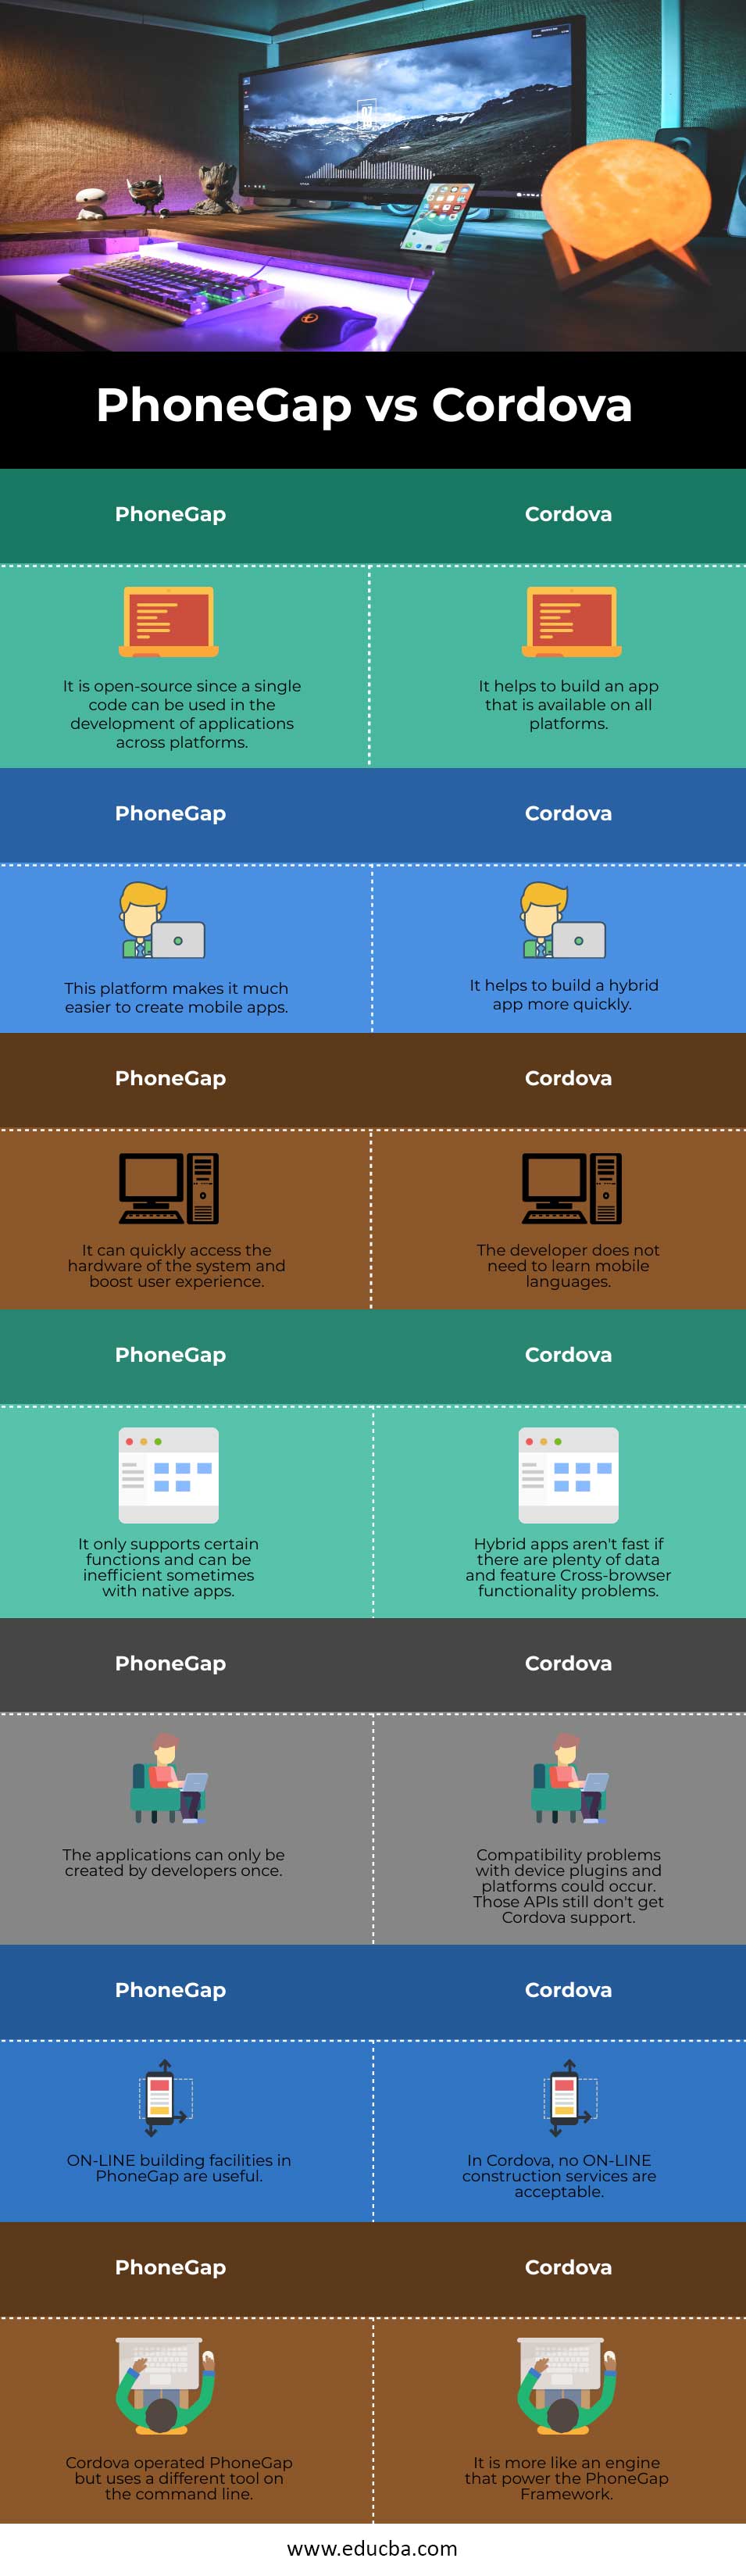 PhoneGap-vs-Cordova-infoPhoneGap-vs-Cordova-info